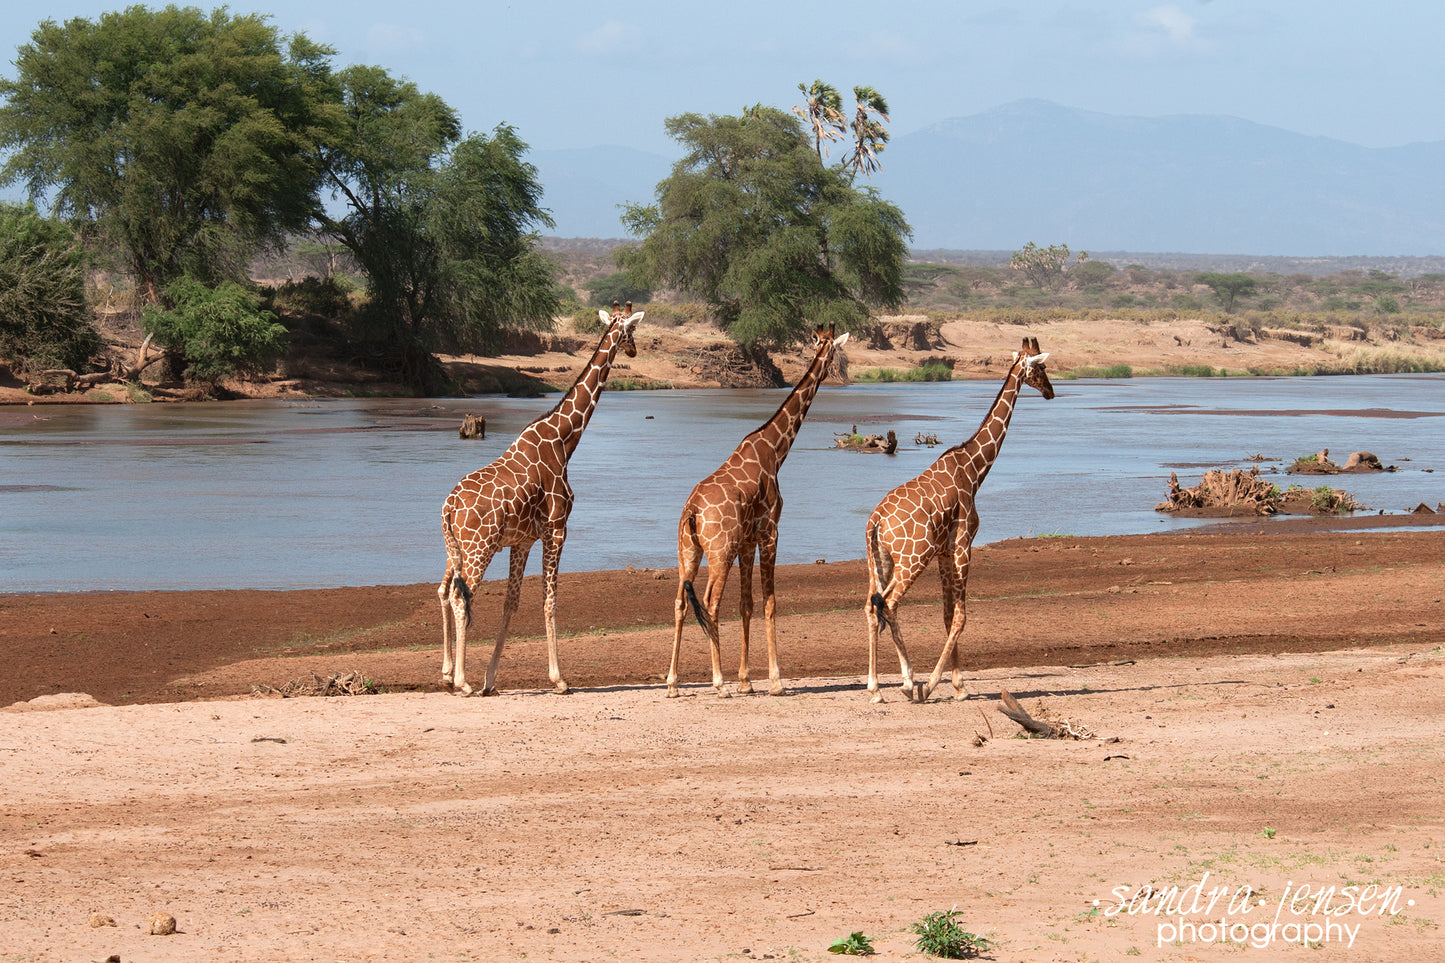 Print - African Giraffes walking along the River